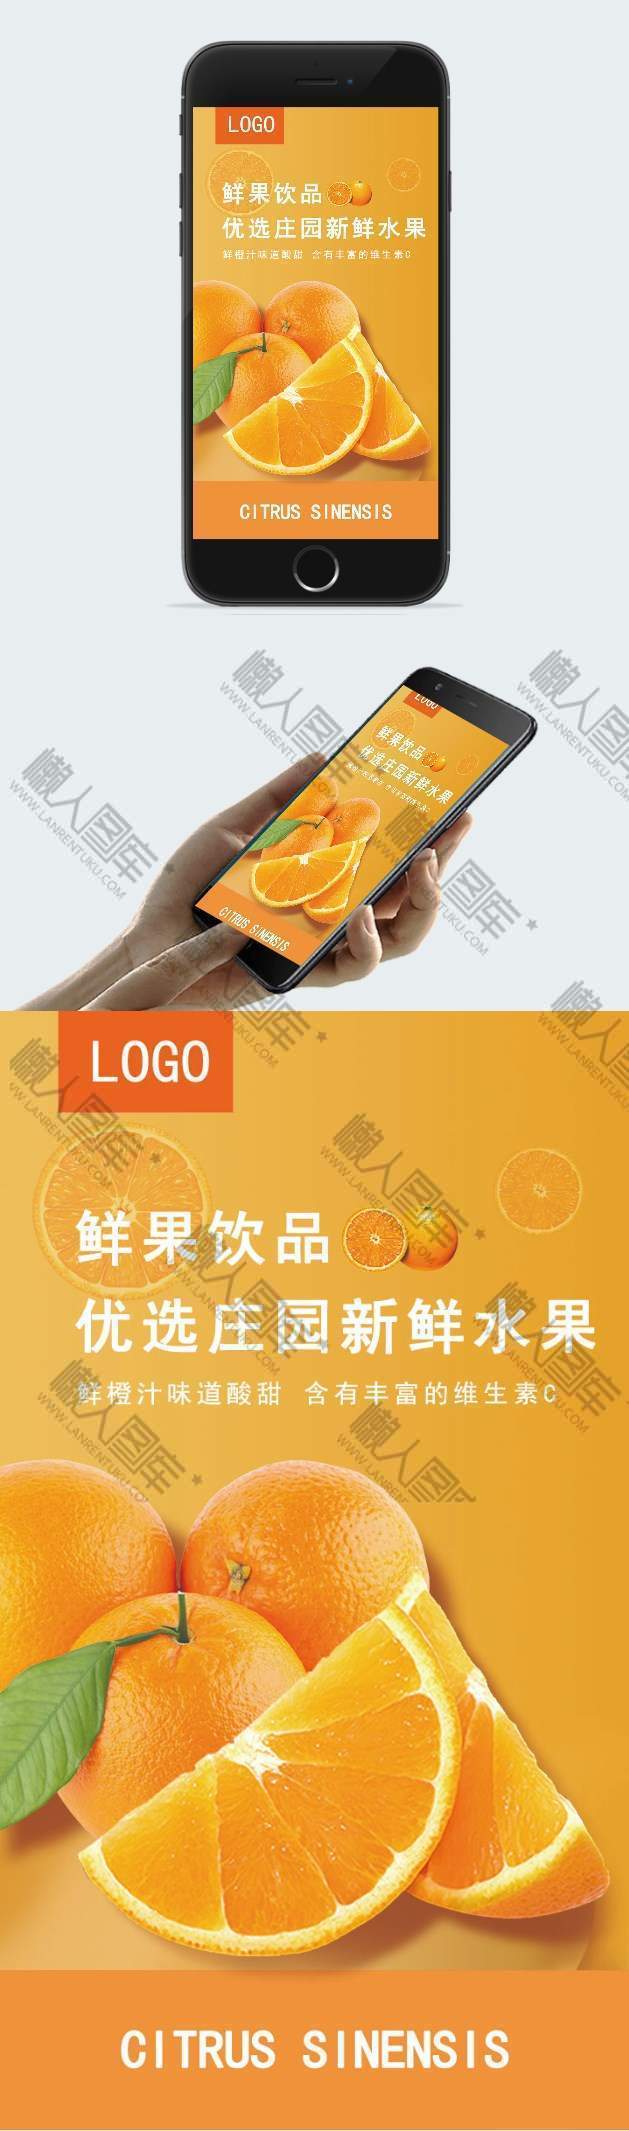 鲜橙饮料广告手机海报